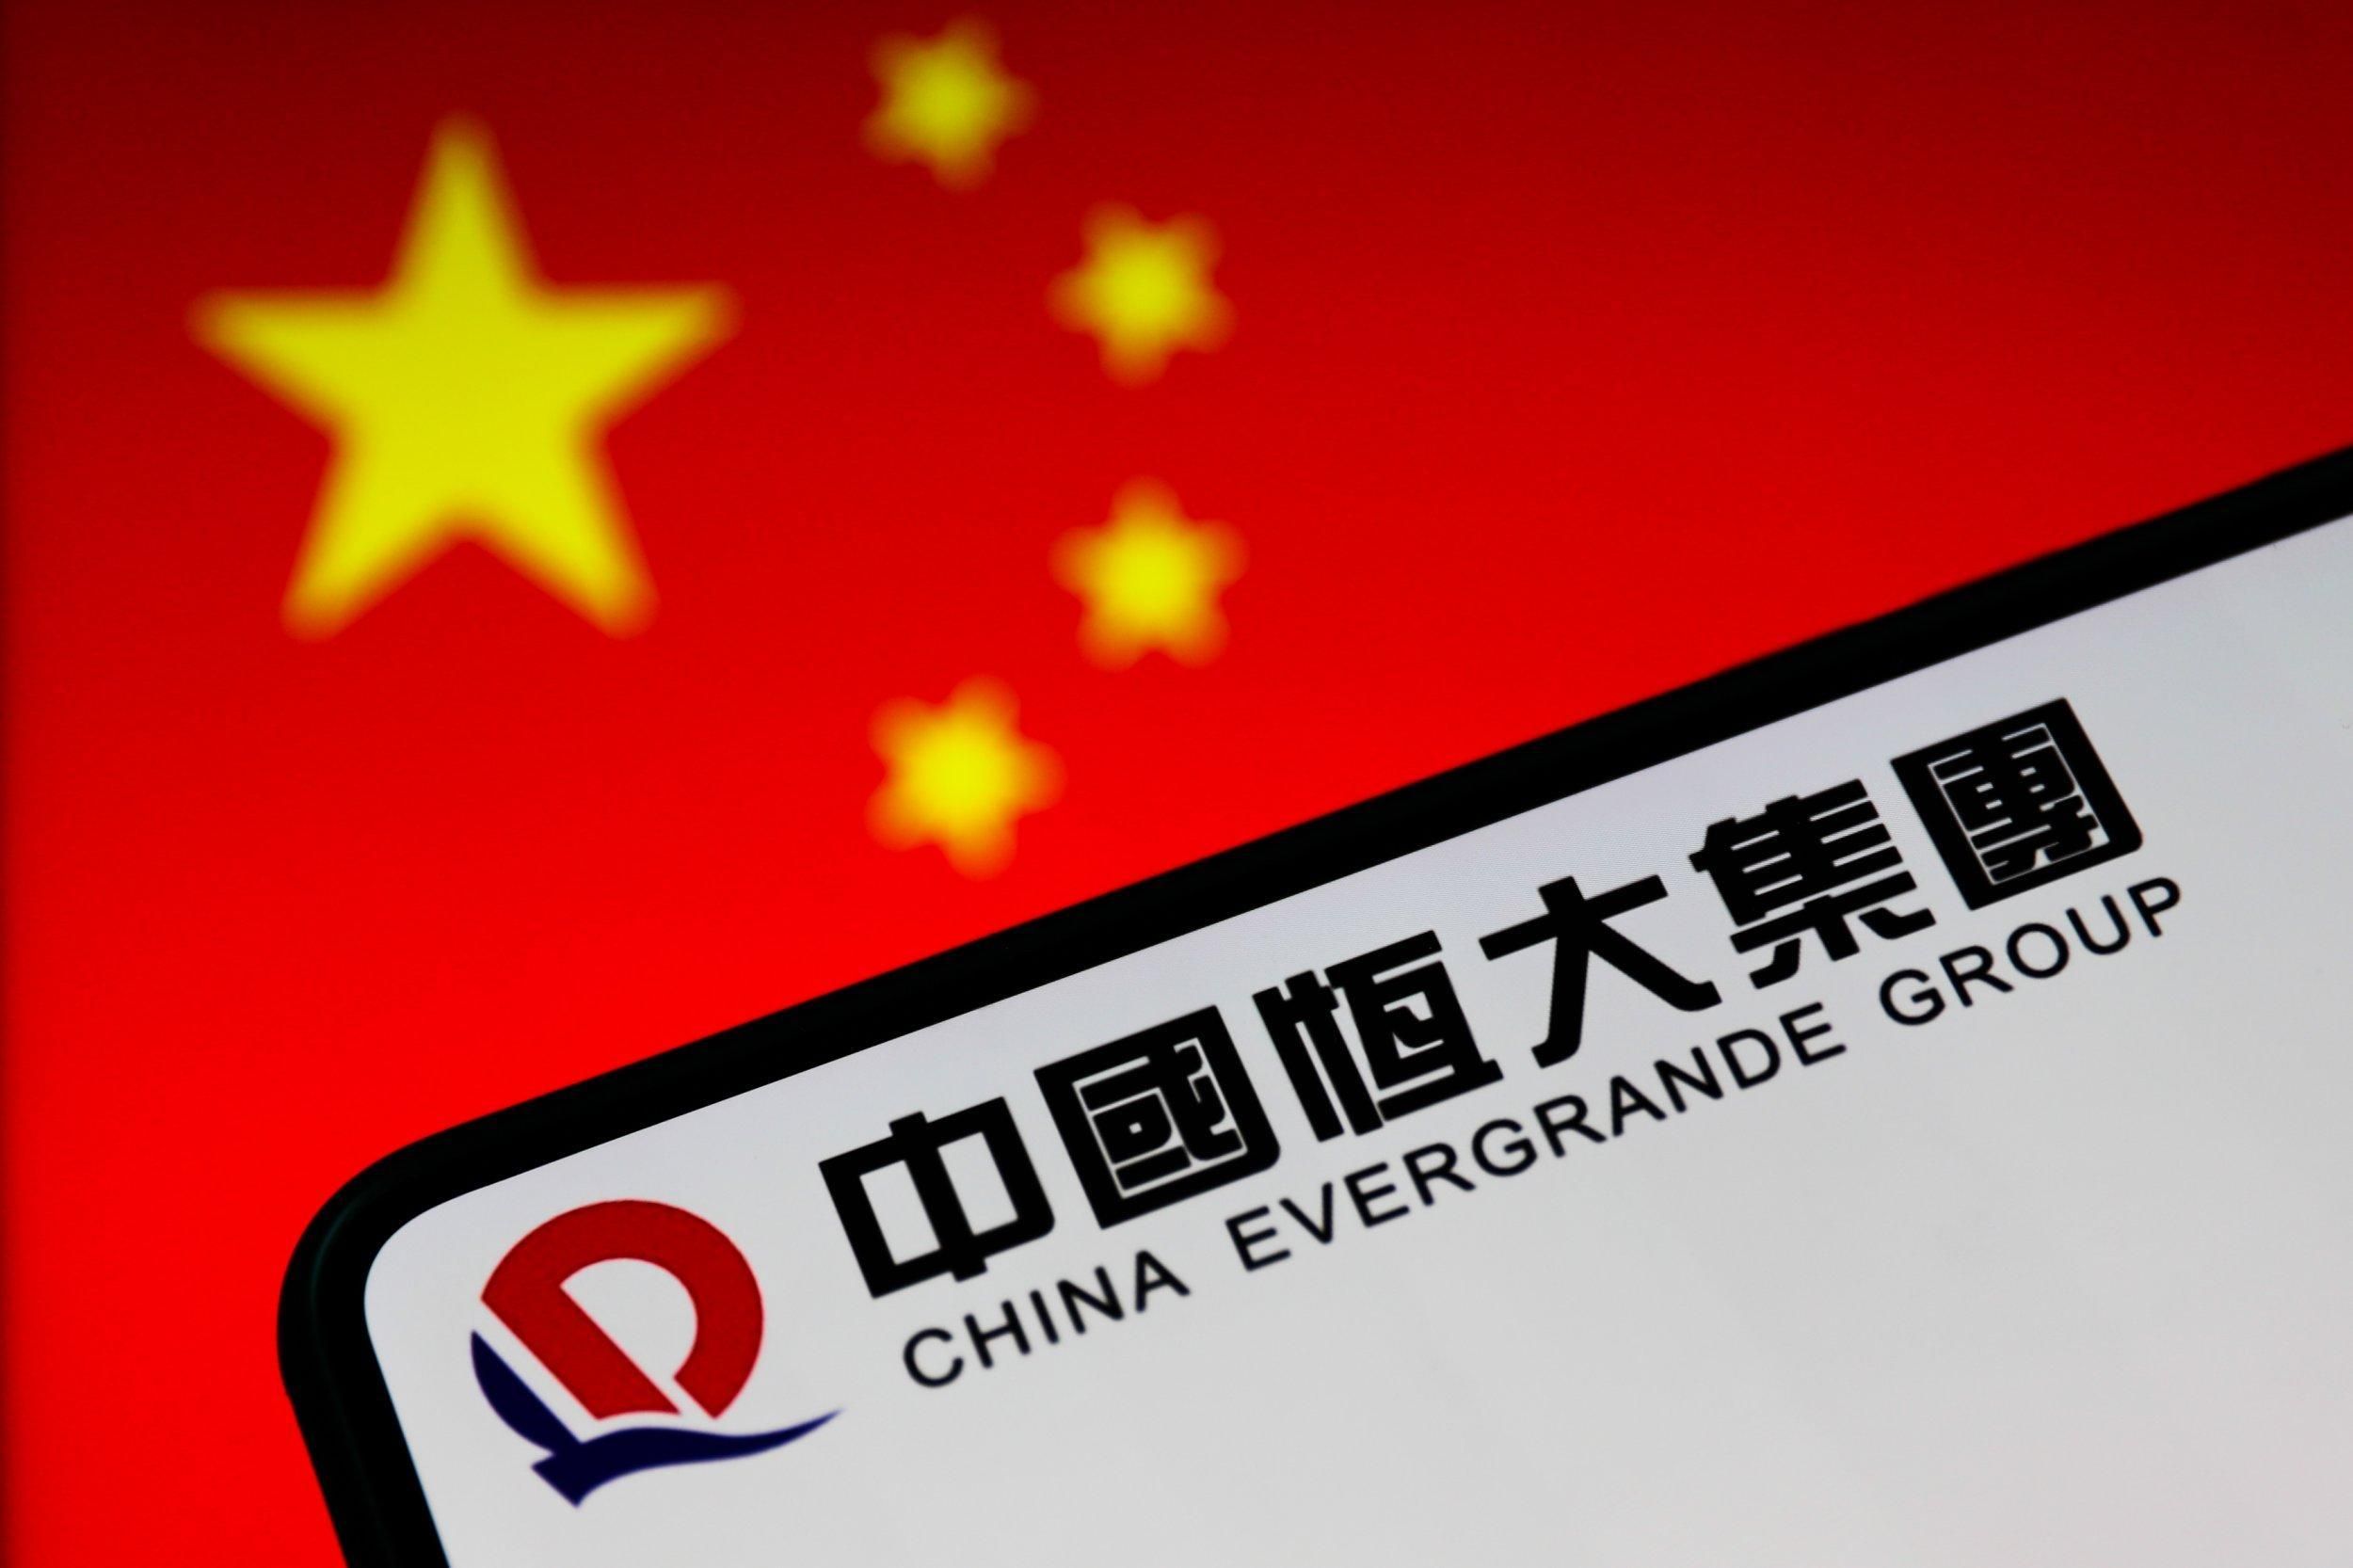 Китайская компания Evergrande объявила дефолт: как это может повлиять на рынок - Финансы